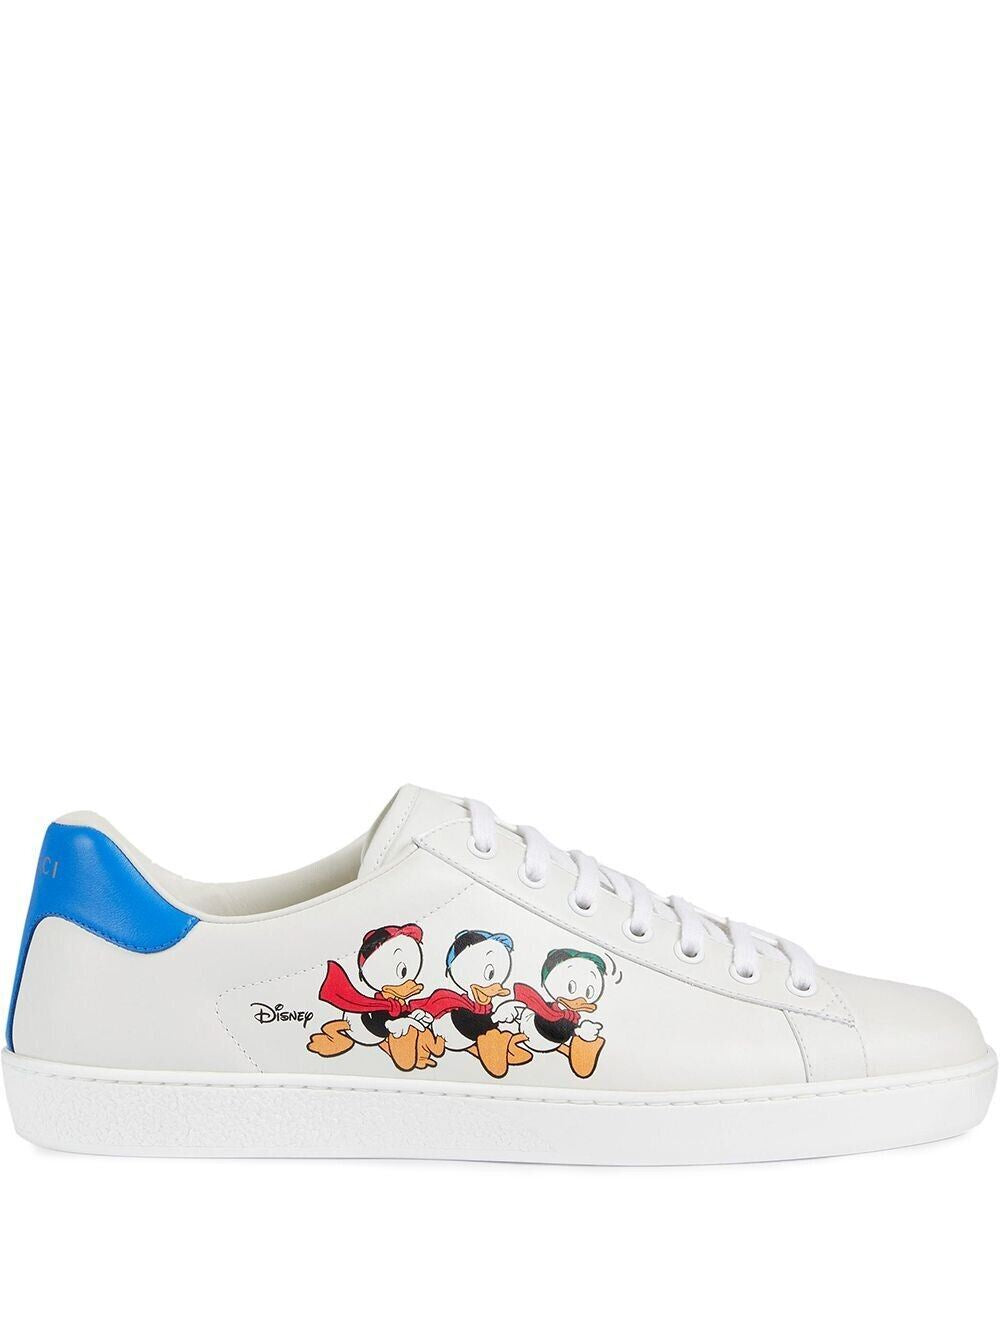 NIB Gucci Ace Duck Women's Disney White Sneakers 9 US (39 Euro) IT 649400 IT